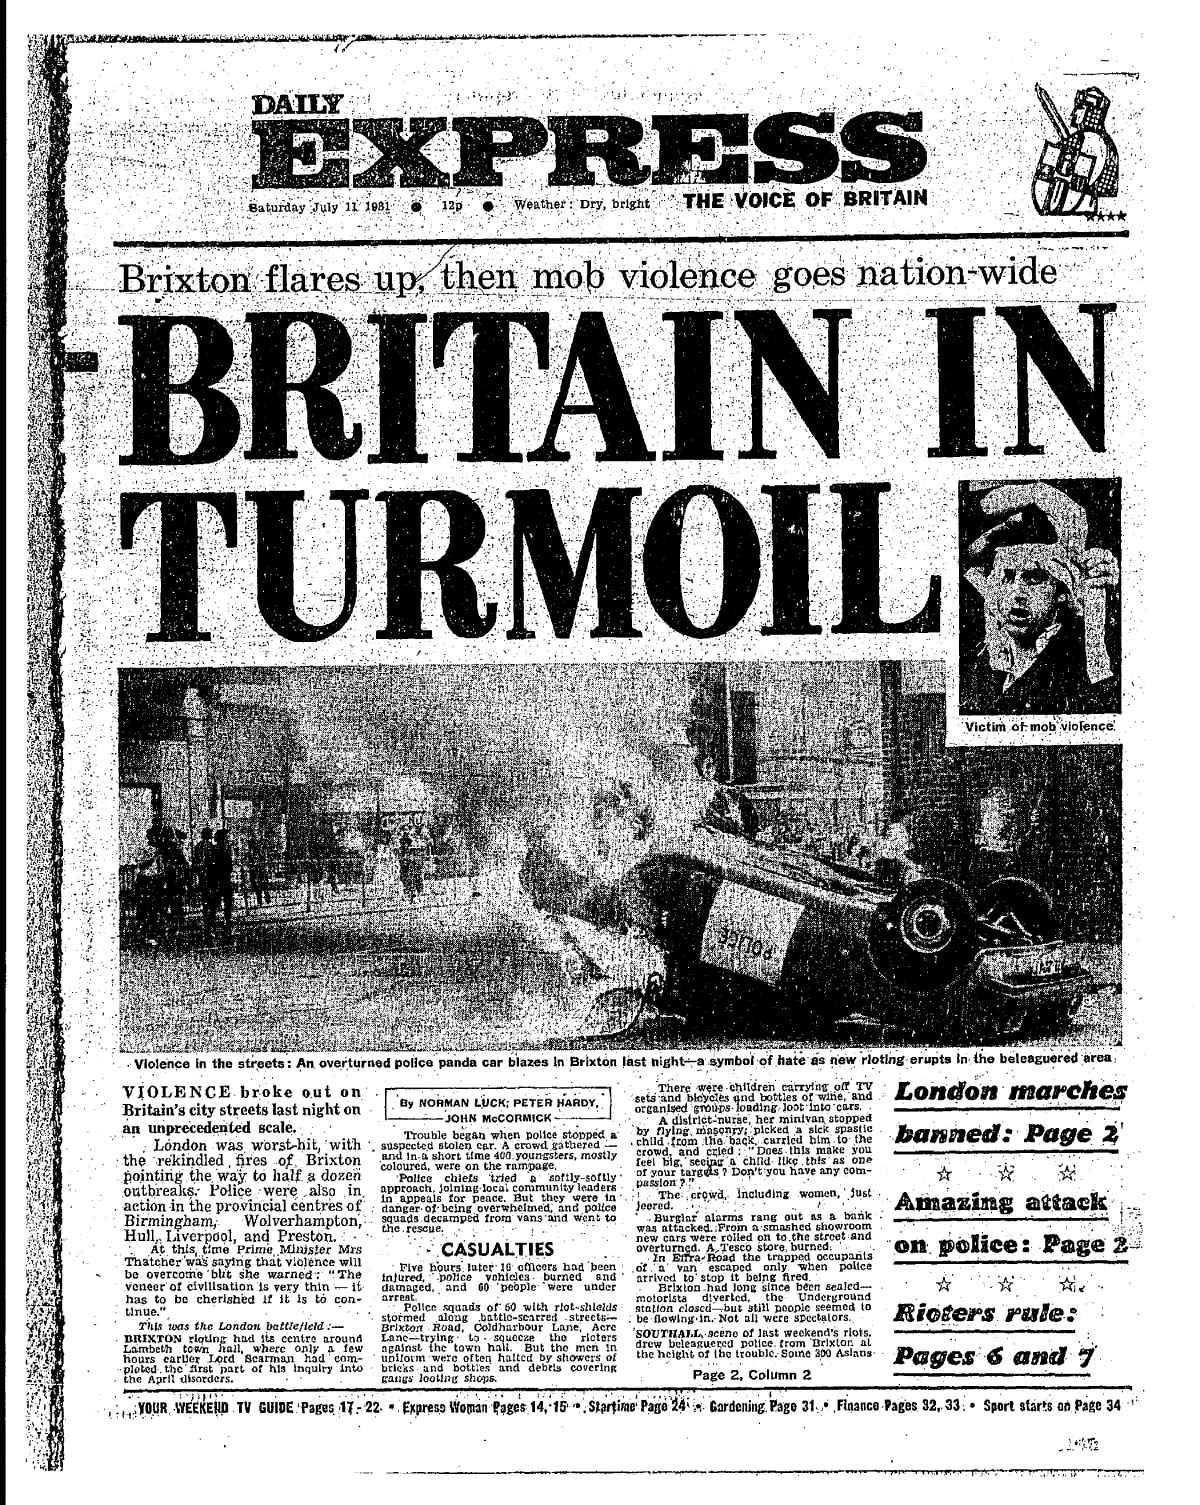 No início dos anos 80, houve uma terrível agitação em Brixton.